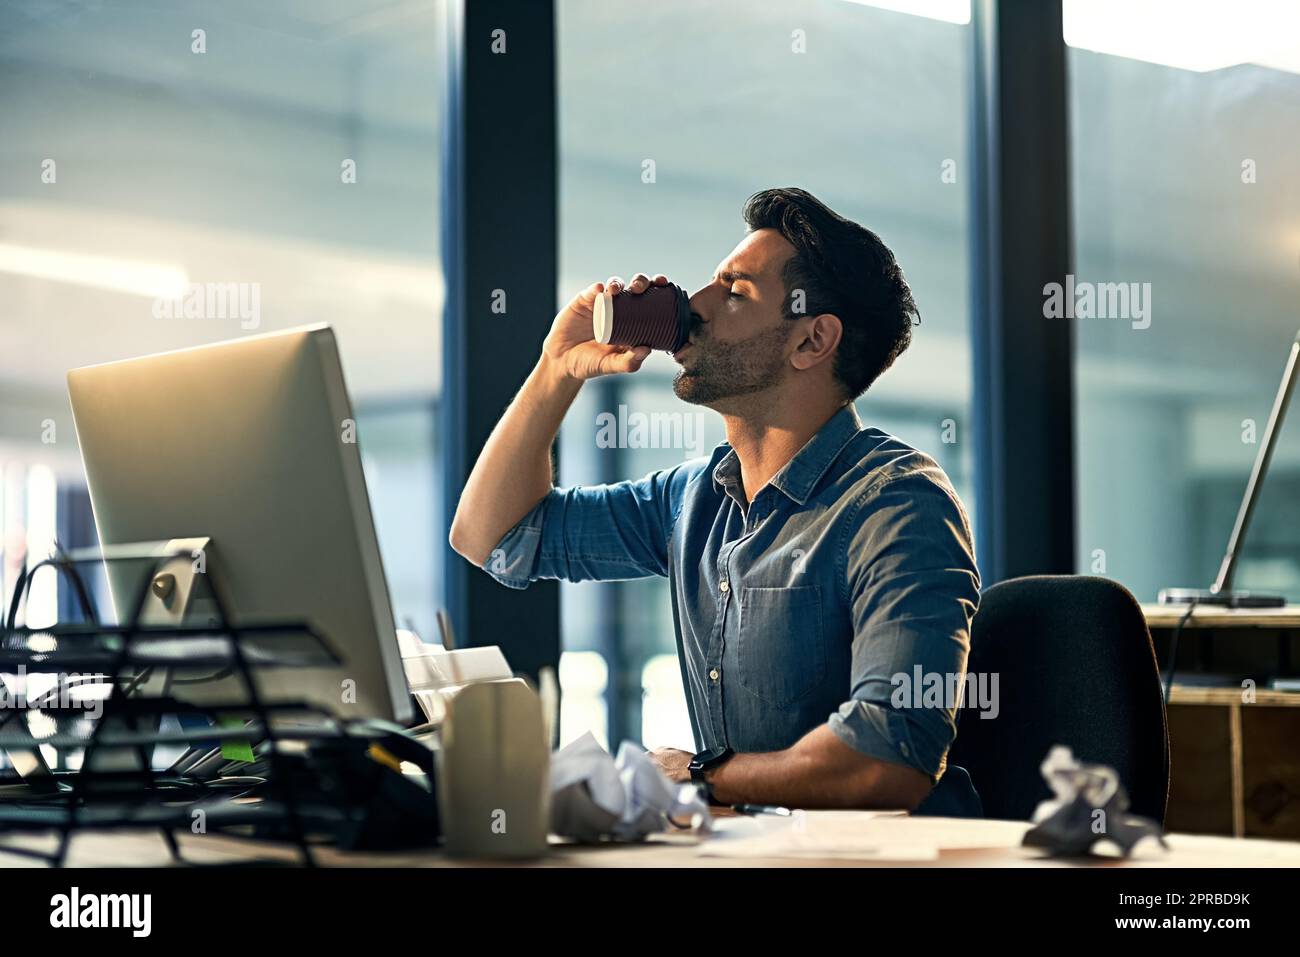 Wach bleiben bei der Arbeit mit einem Koffeinschub. Aufnahme eines jungen Geschäftsmannes, der während einer späten Nacht auf der Arbeit Kaffee trinkt. Stockfoto